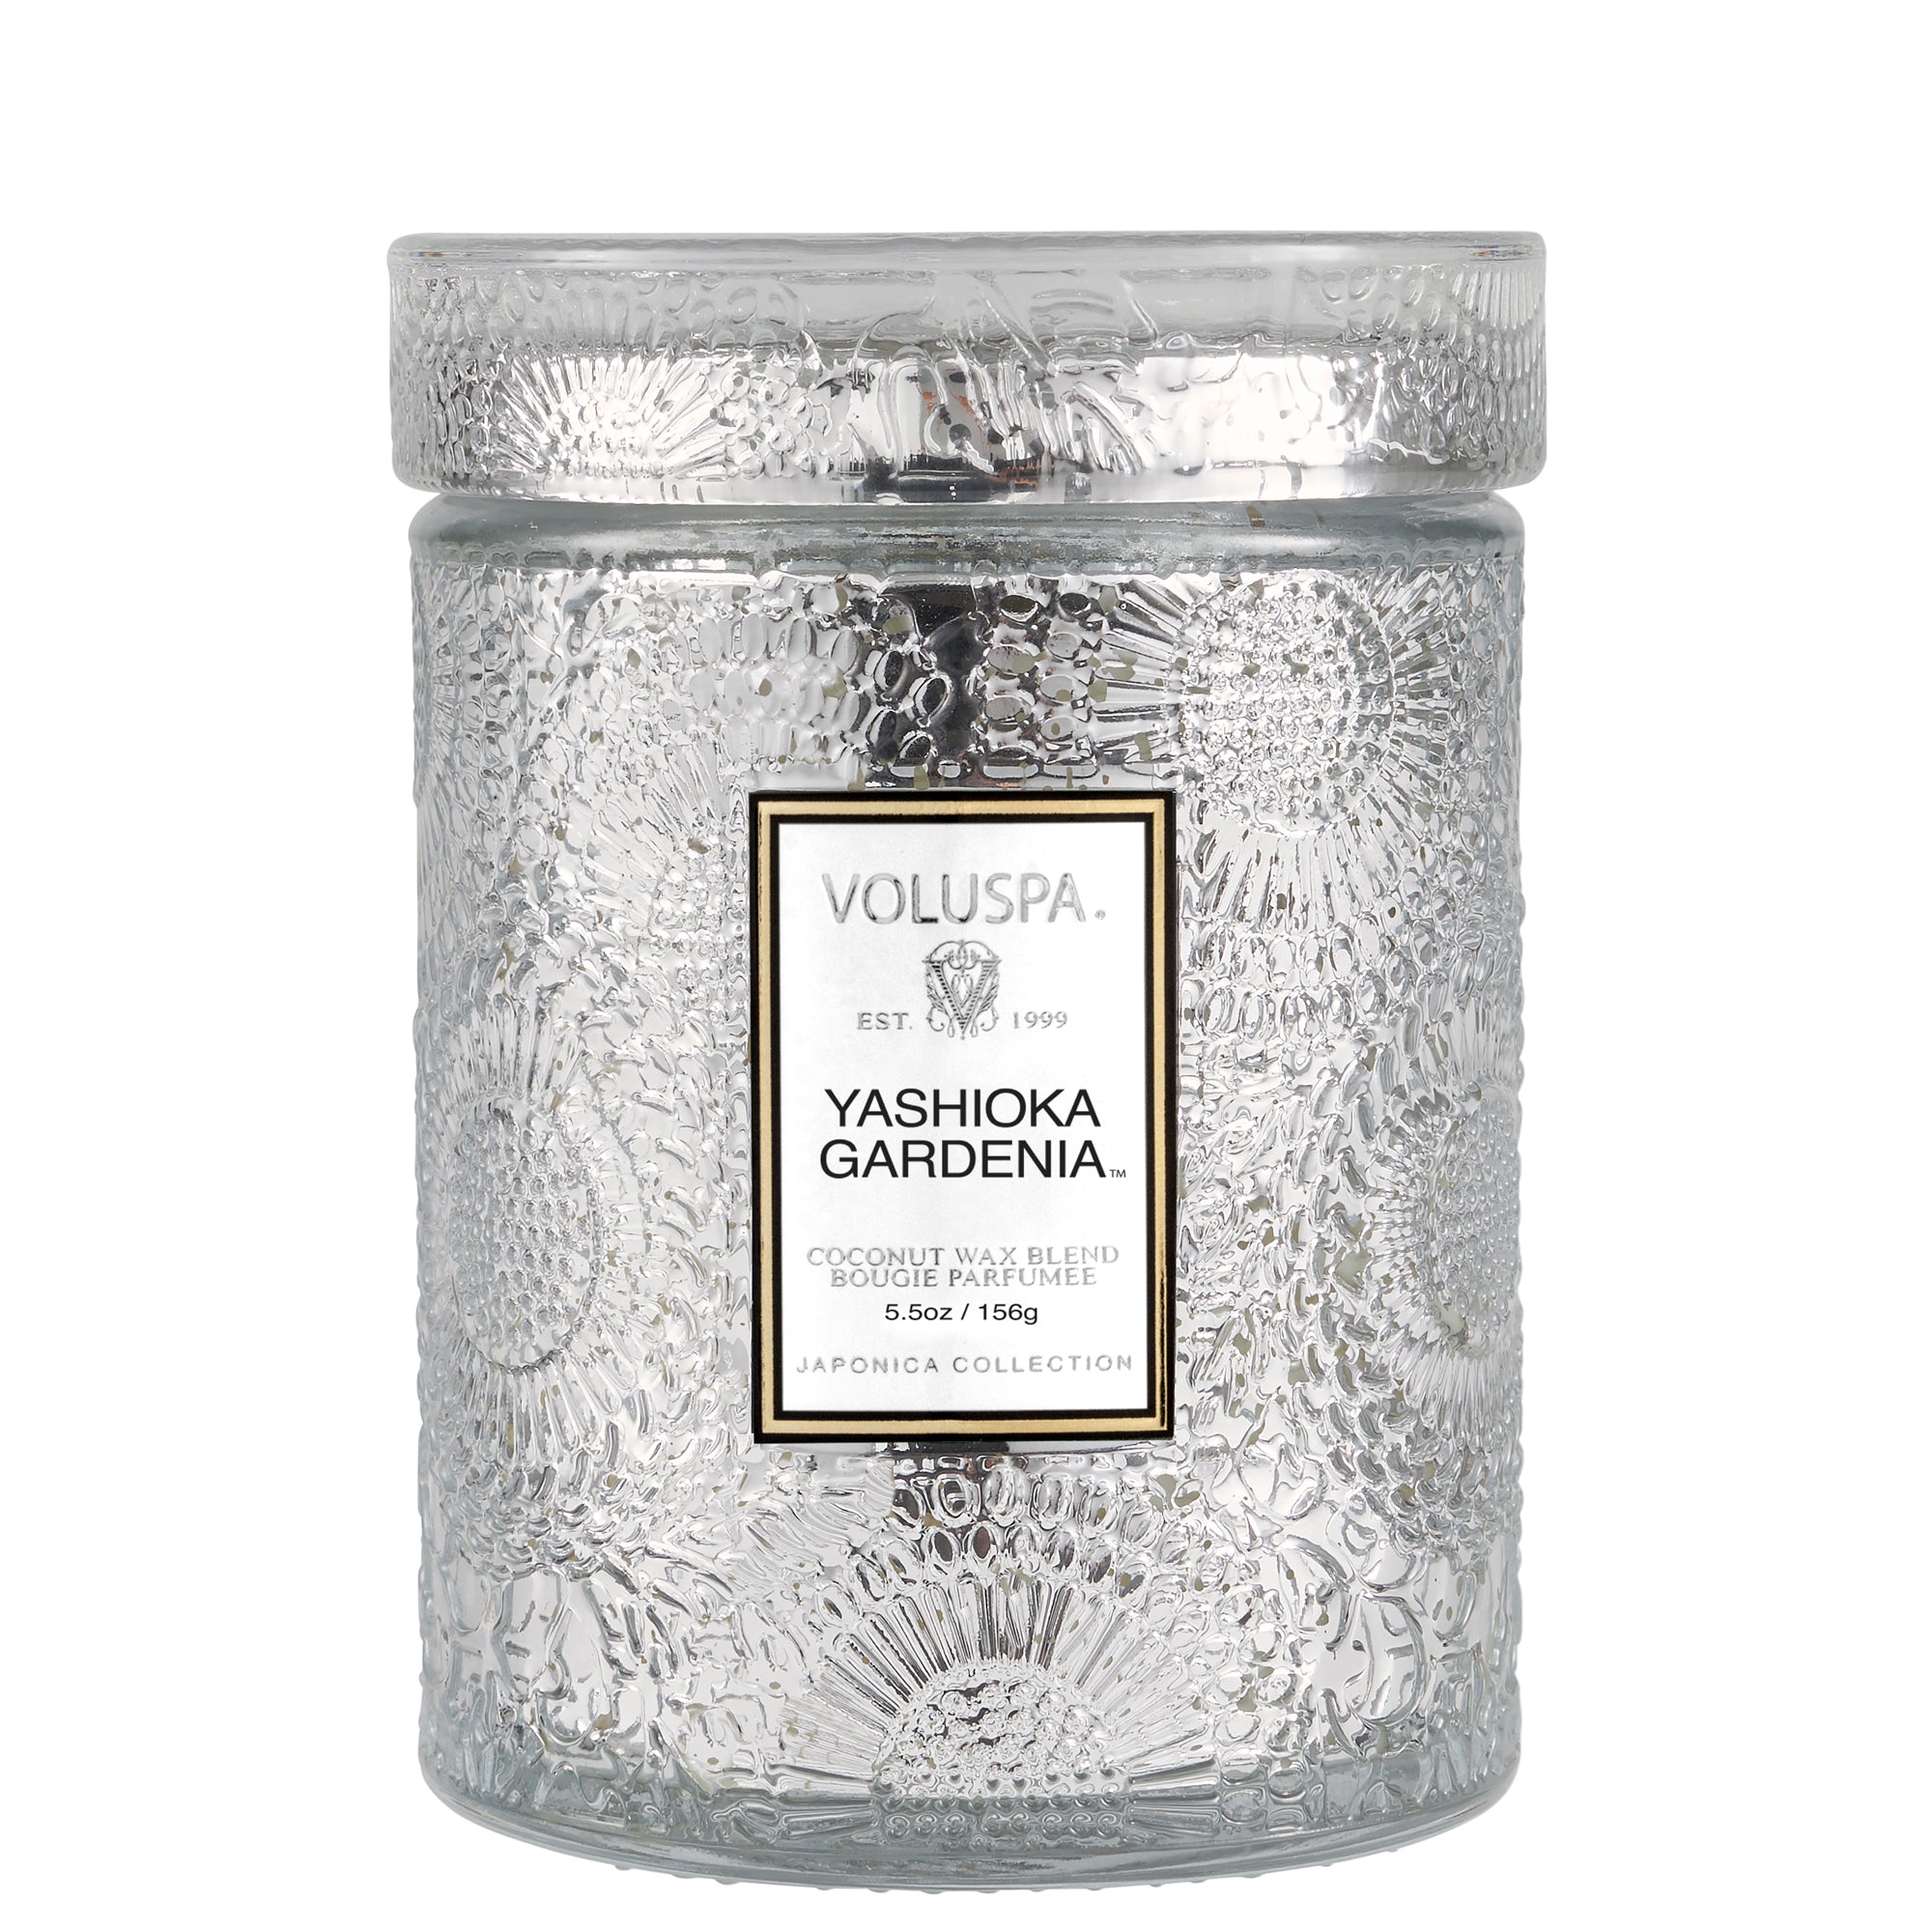 Yashioka Gardenia - Small Jar Candle